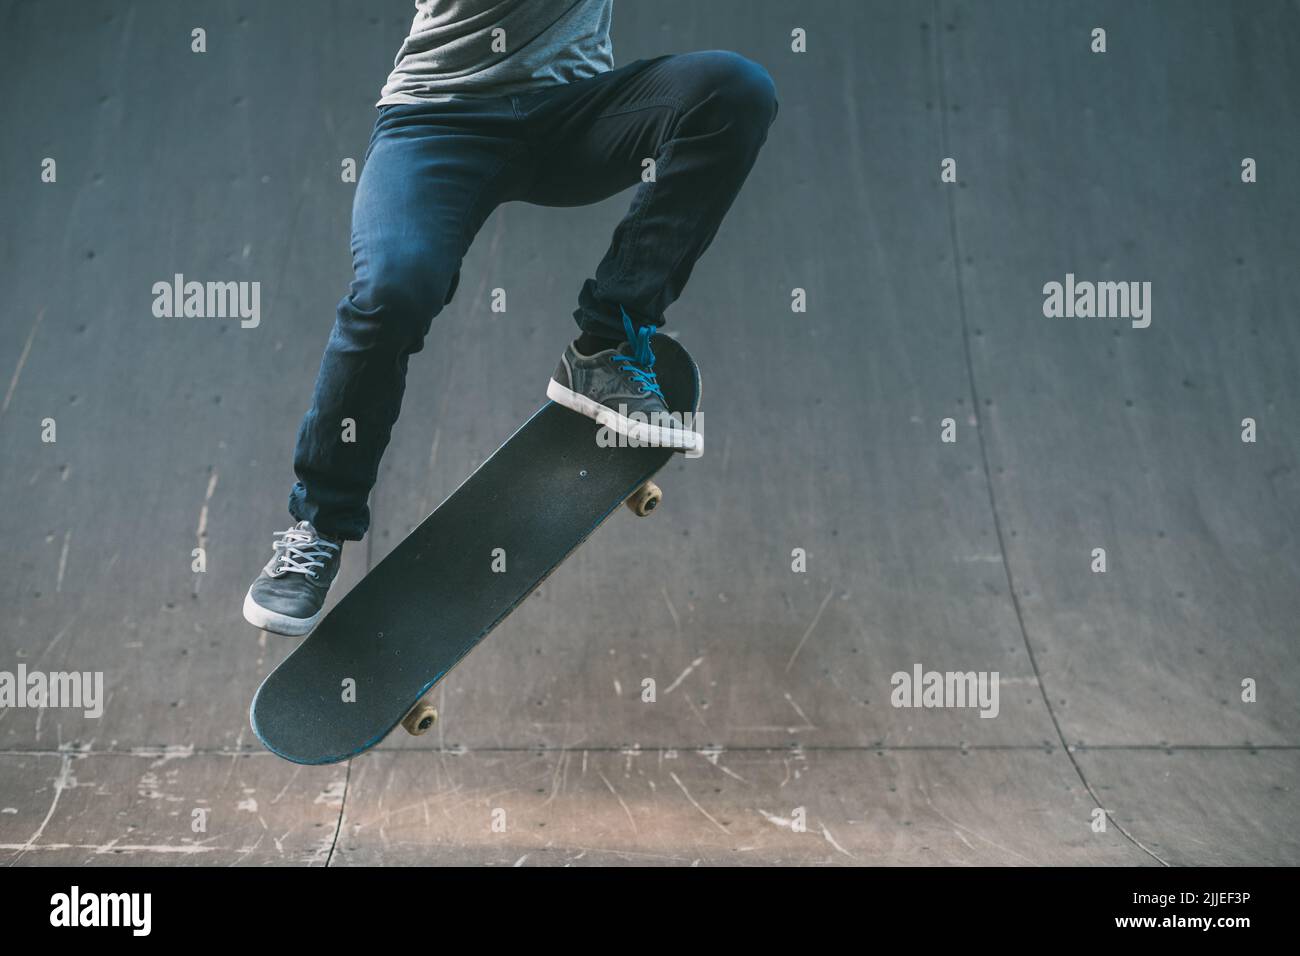 skateboarder action extrême style de vie ollie trick Banque D'Images